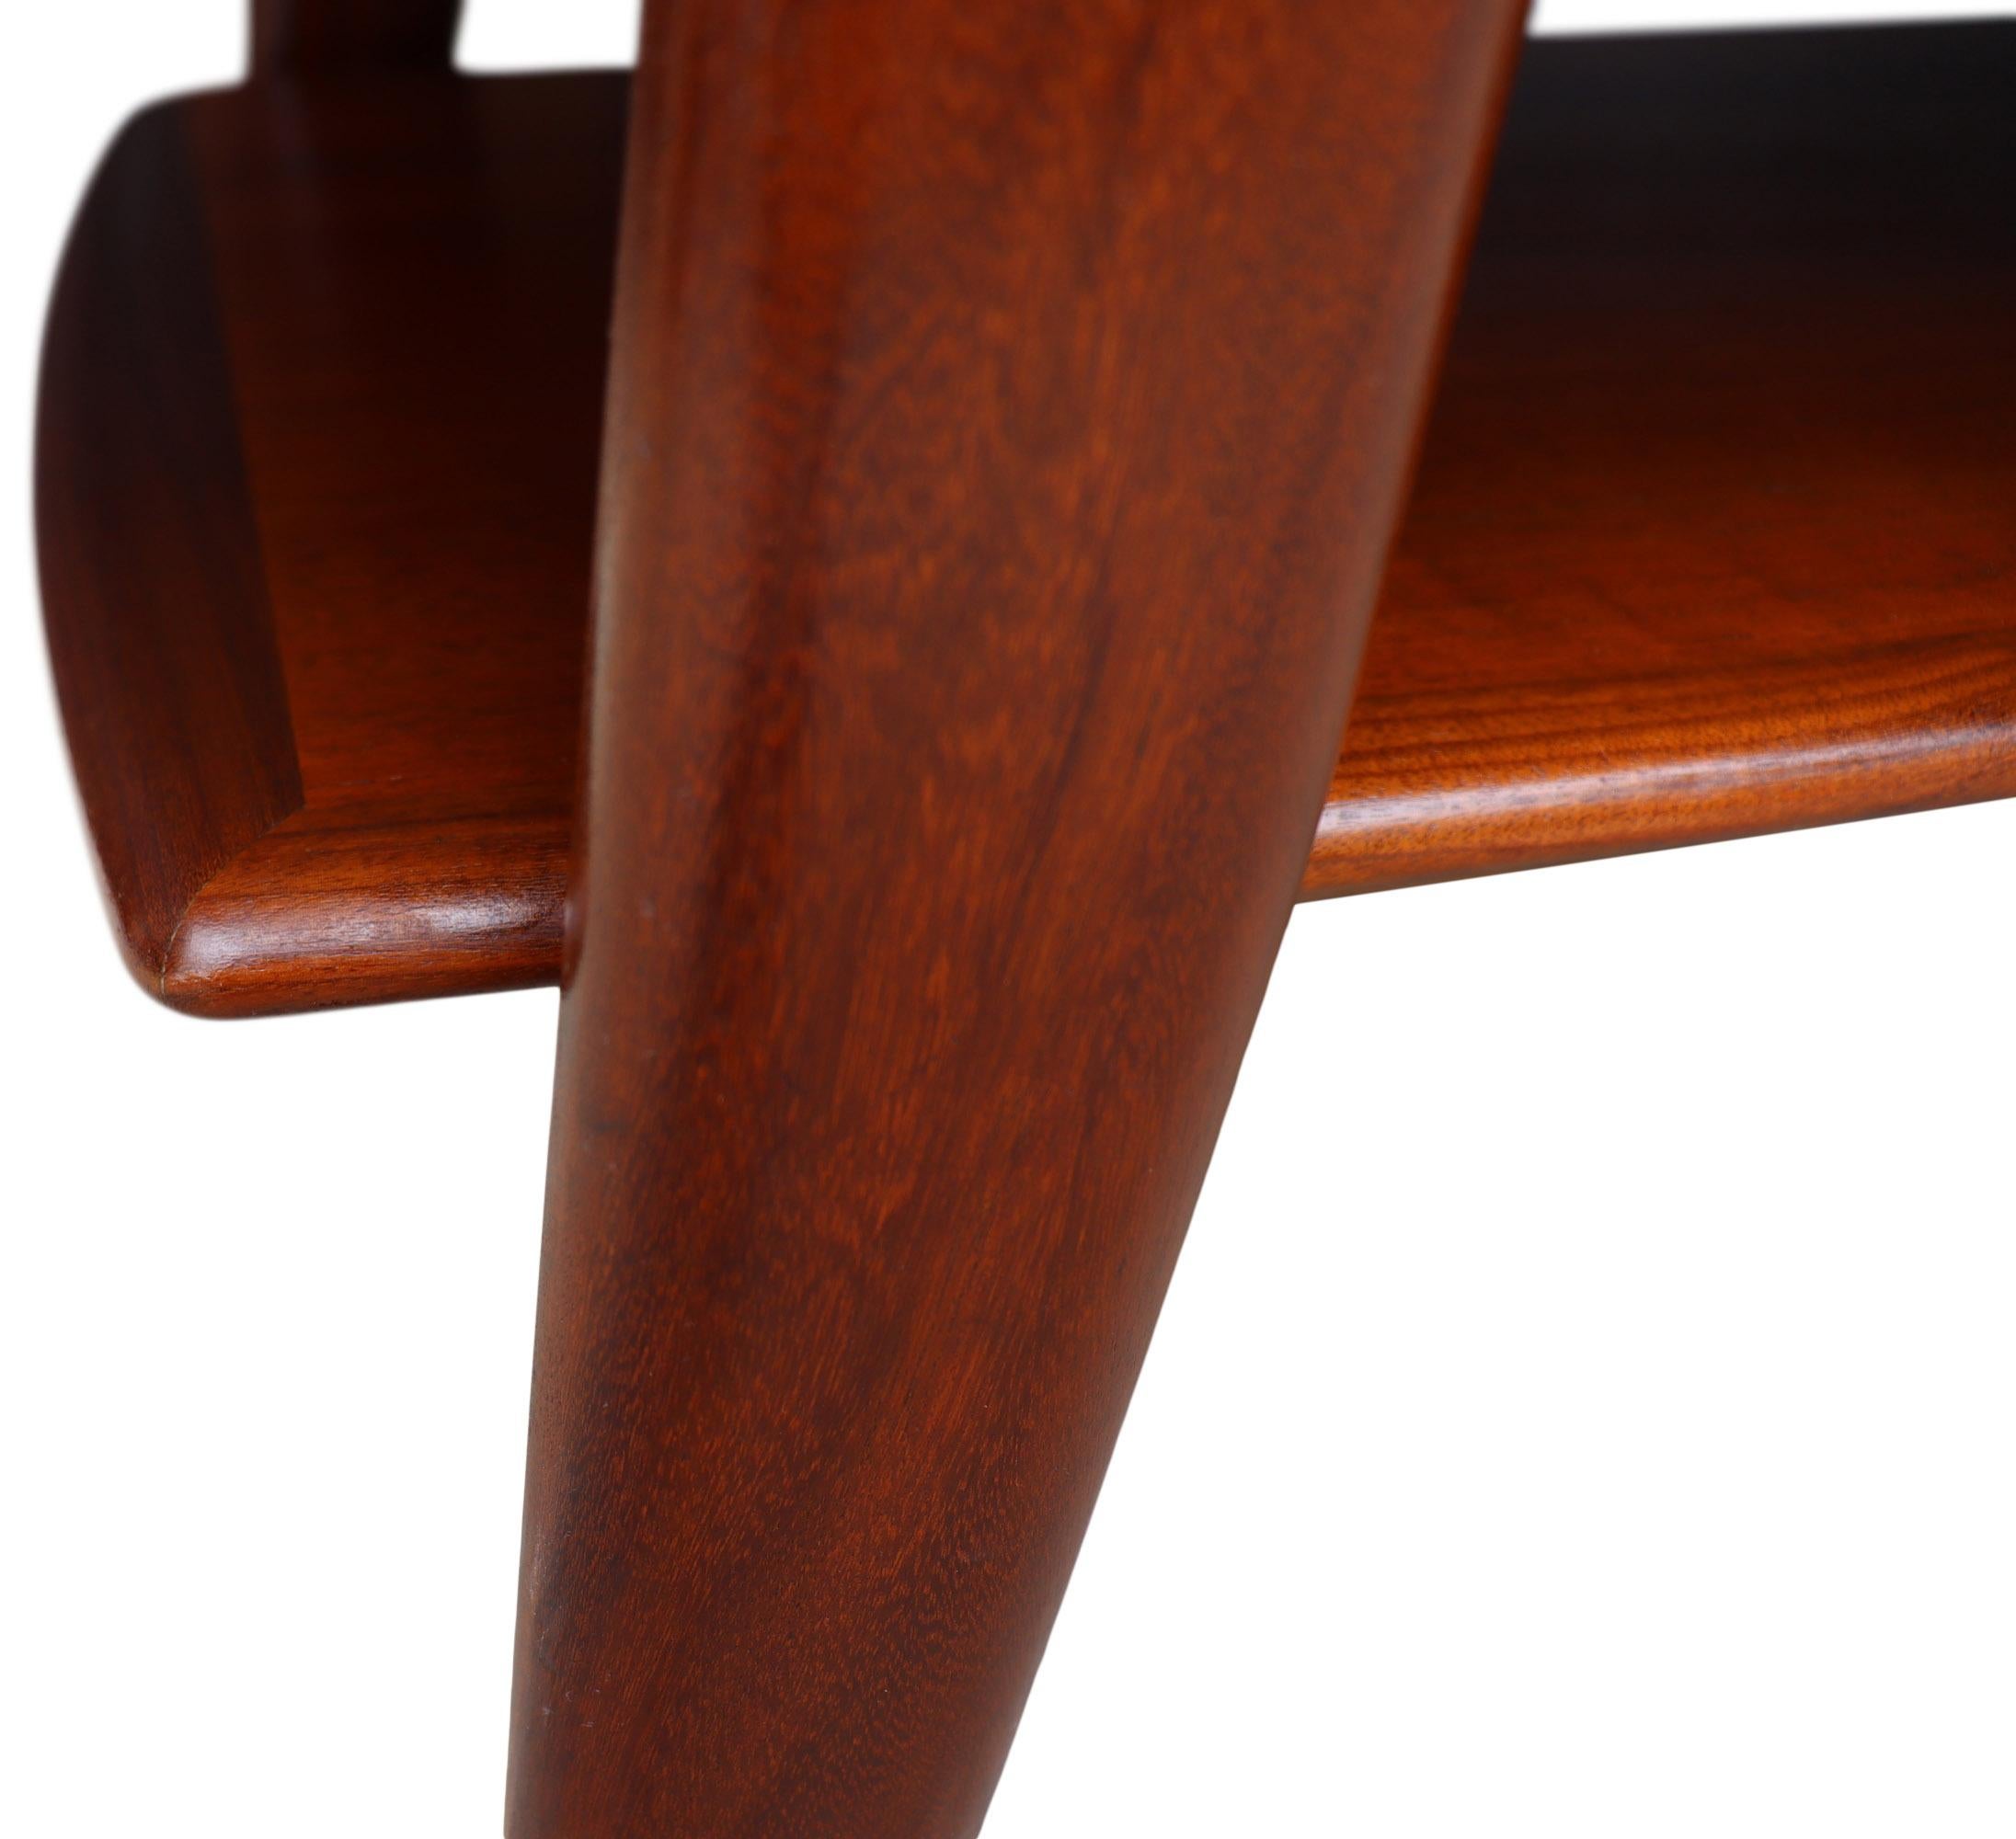 Nous vous proposons cette magnifique table basse moderne danoise aux lignes époustouflantes. La construction en teck bicolore avec des bords courbés gracieux est un gage de qualité. Conçu par Svend Aage Madsen pour Karl Lindegaard. En merveilleux